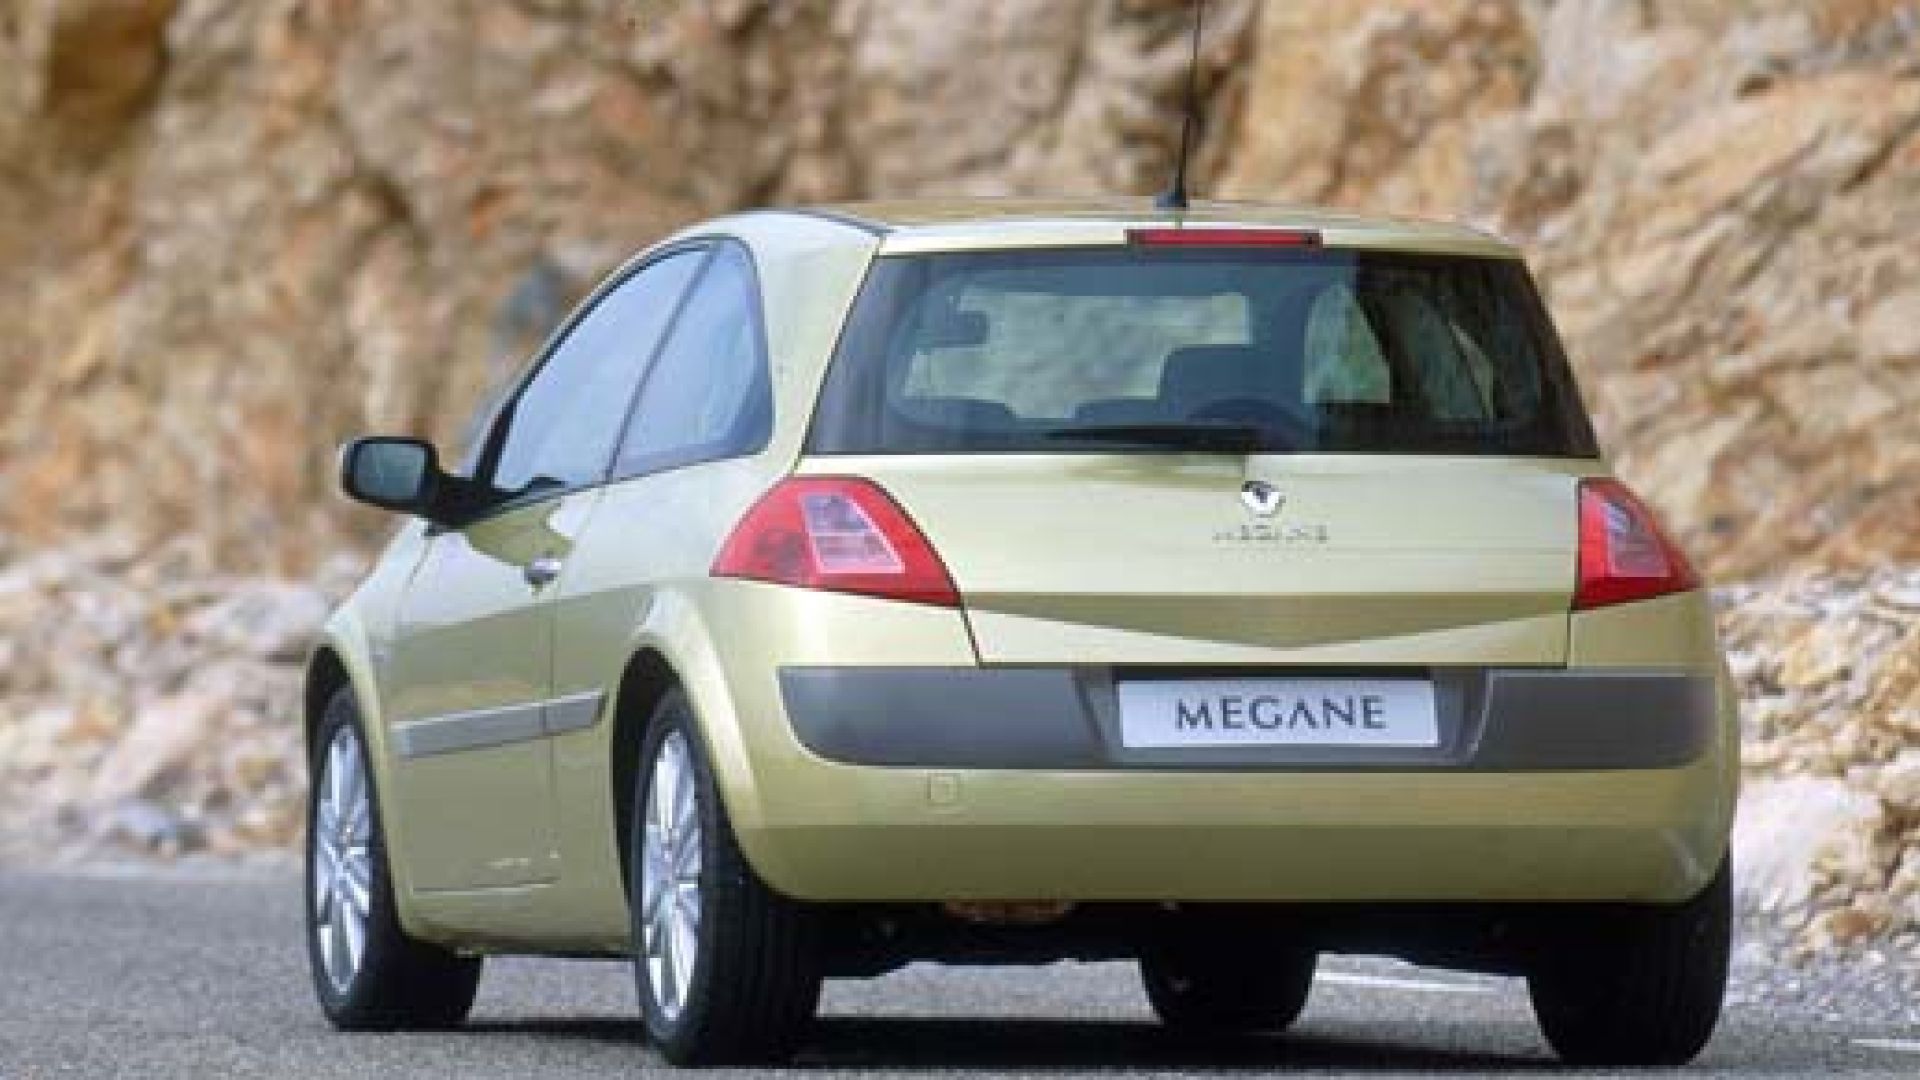 2002 megane. Renault Megan 2. Рено Меган 2 2002. Renault Megane II 2002. Renault Megane 2 Coupe.